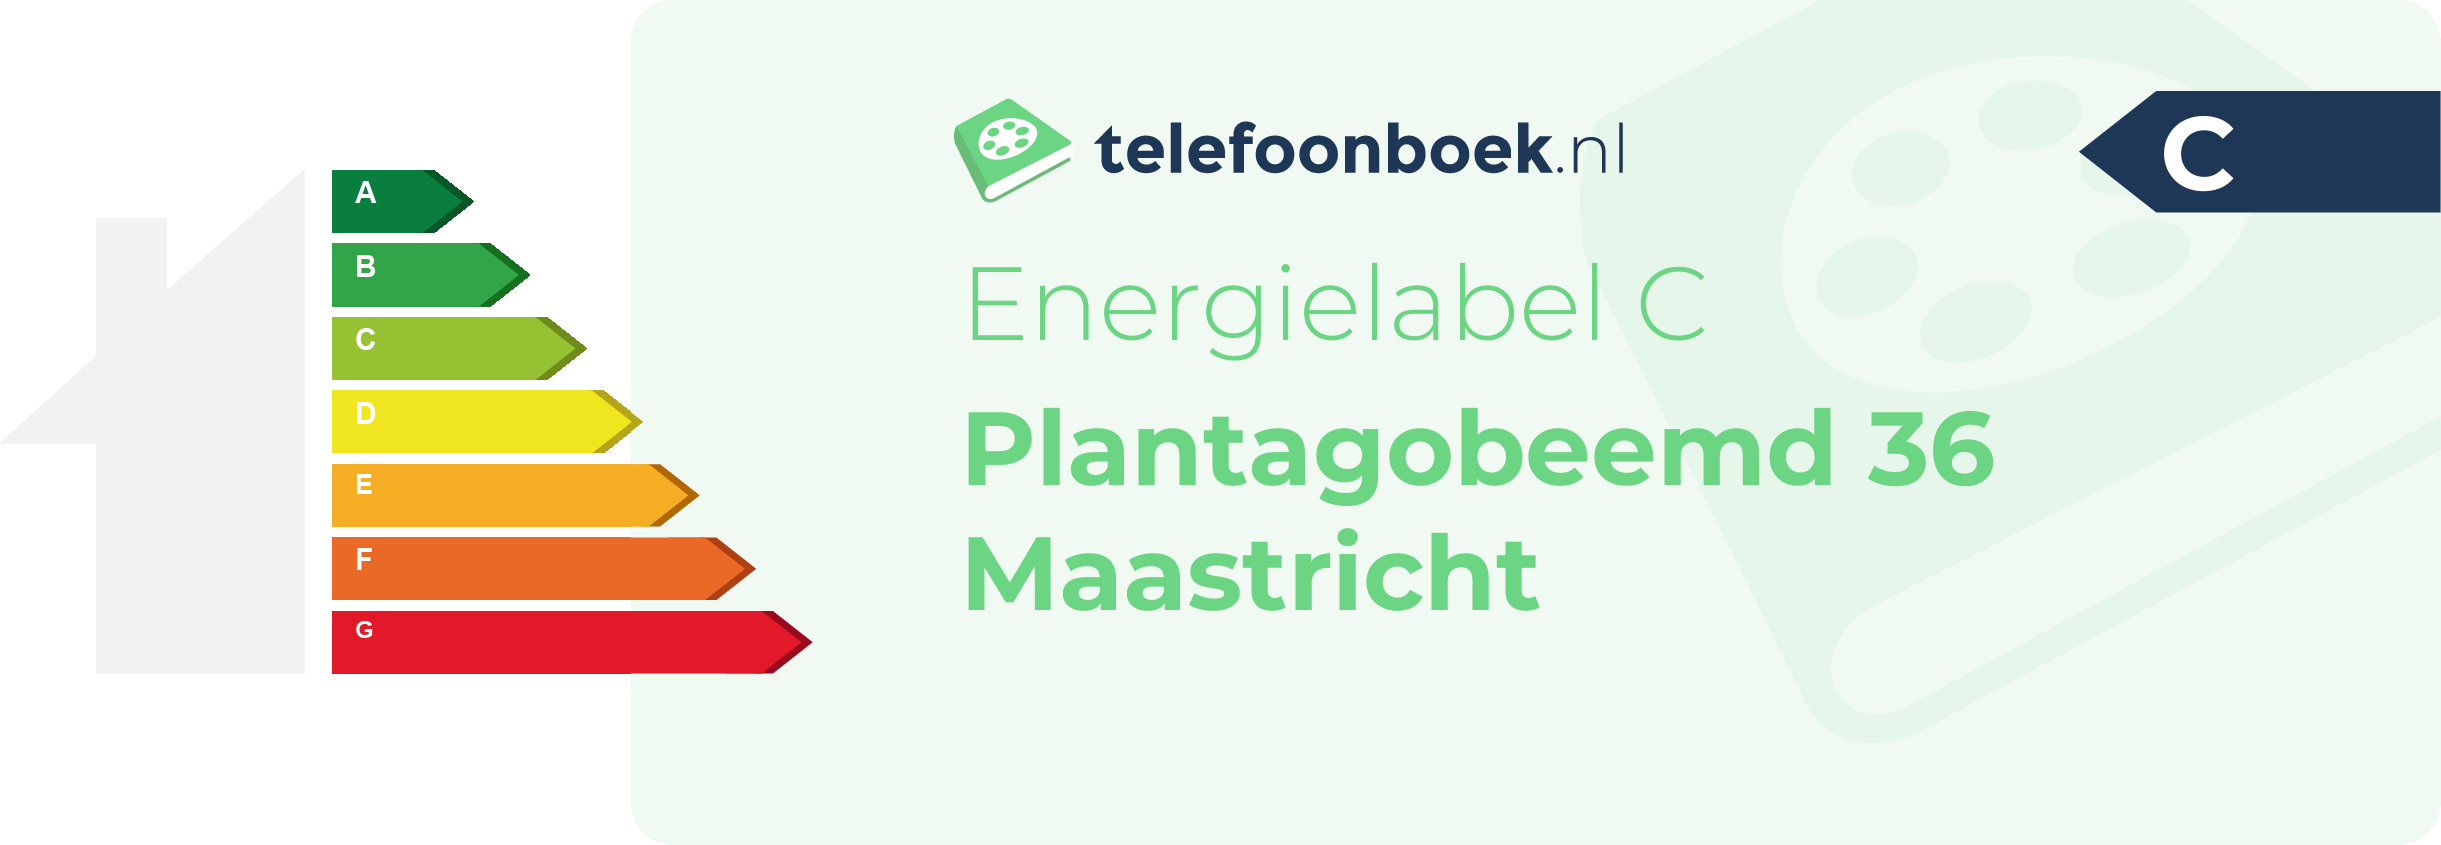 Energielabel Plantagobeemd 36 Maastricht